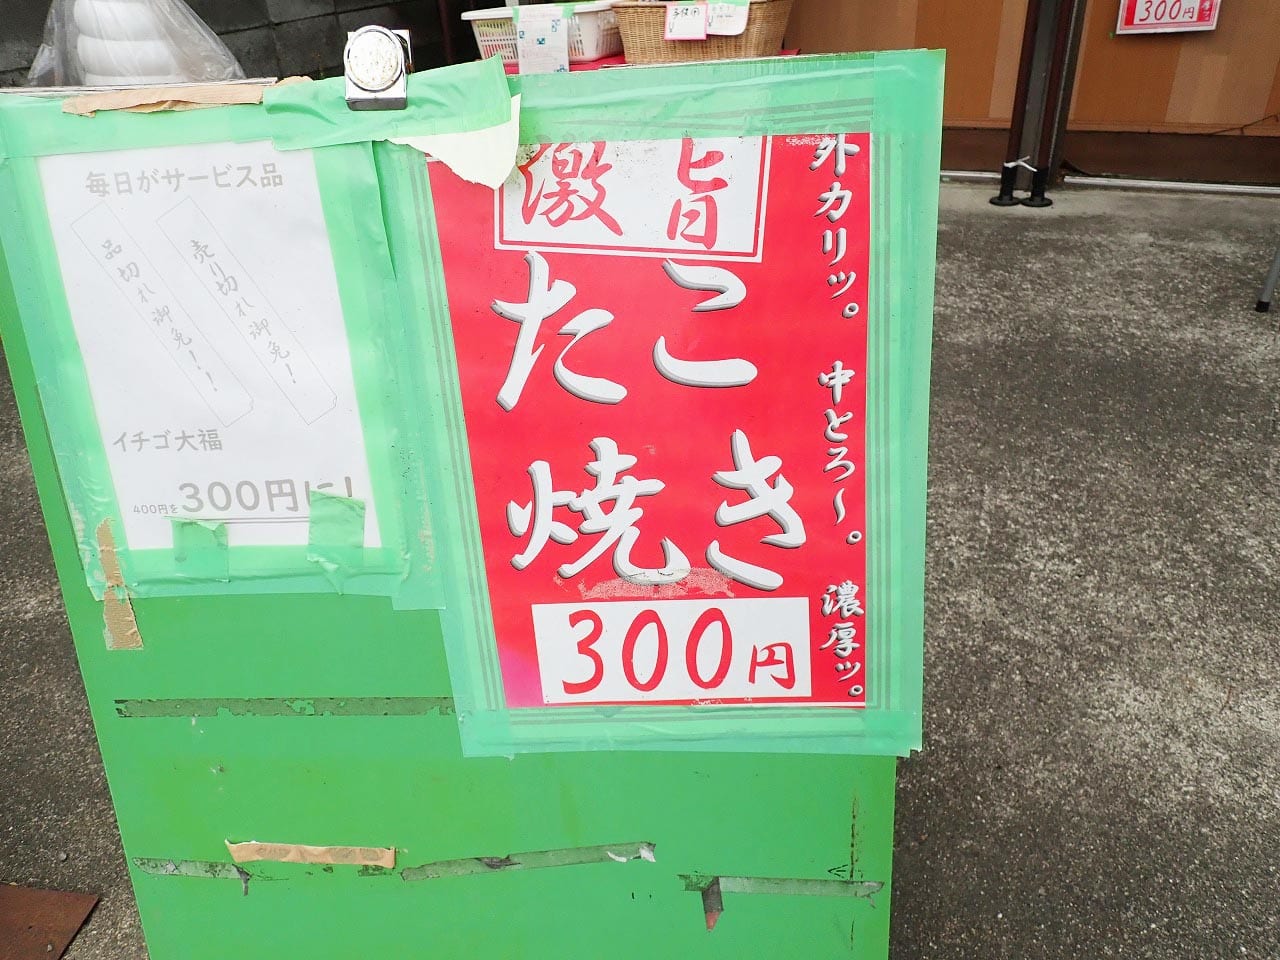 300円のたこ焼きを販売している『びっくり太閤』